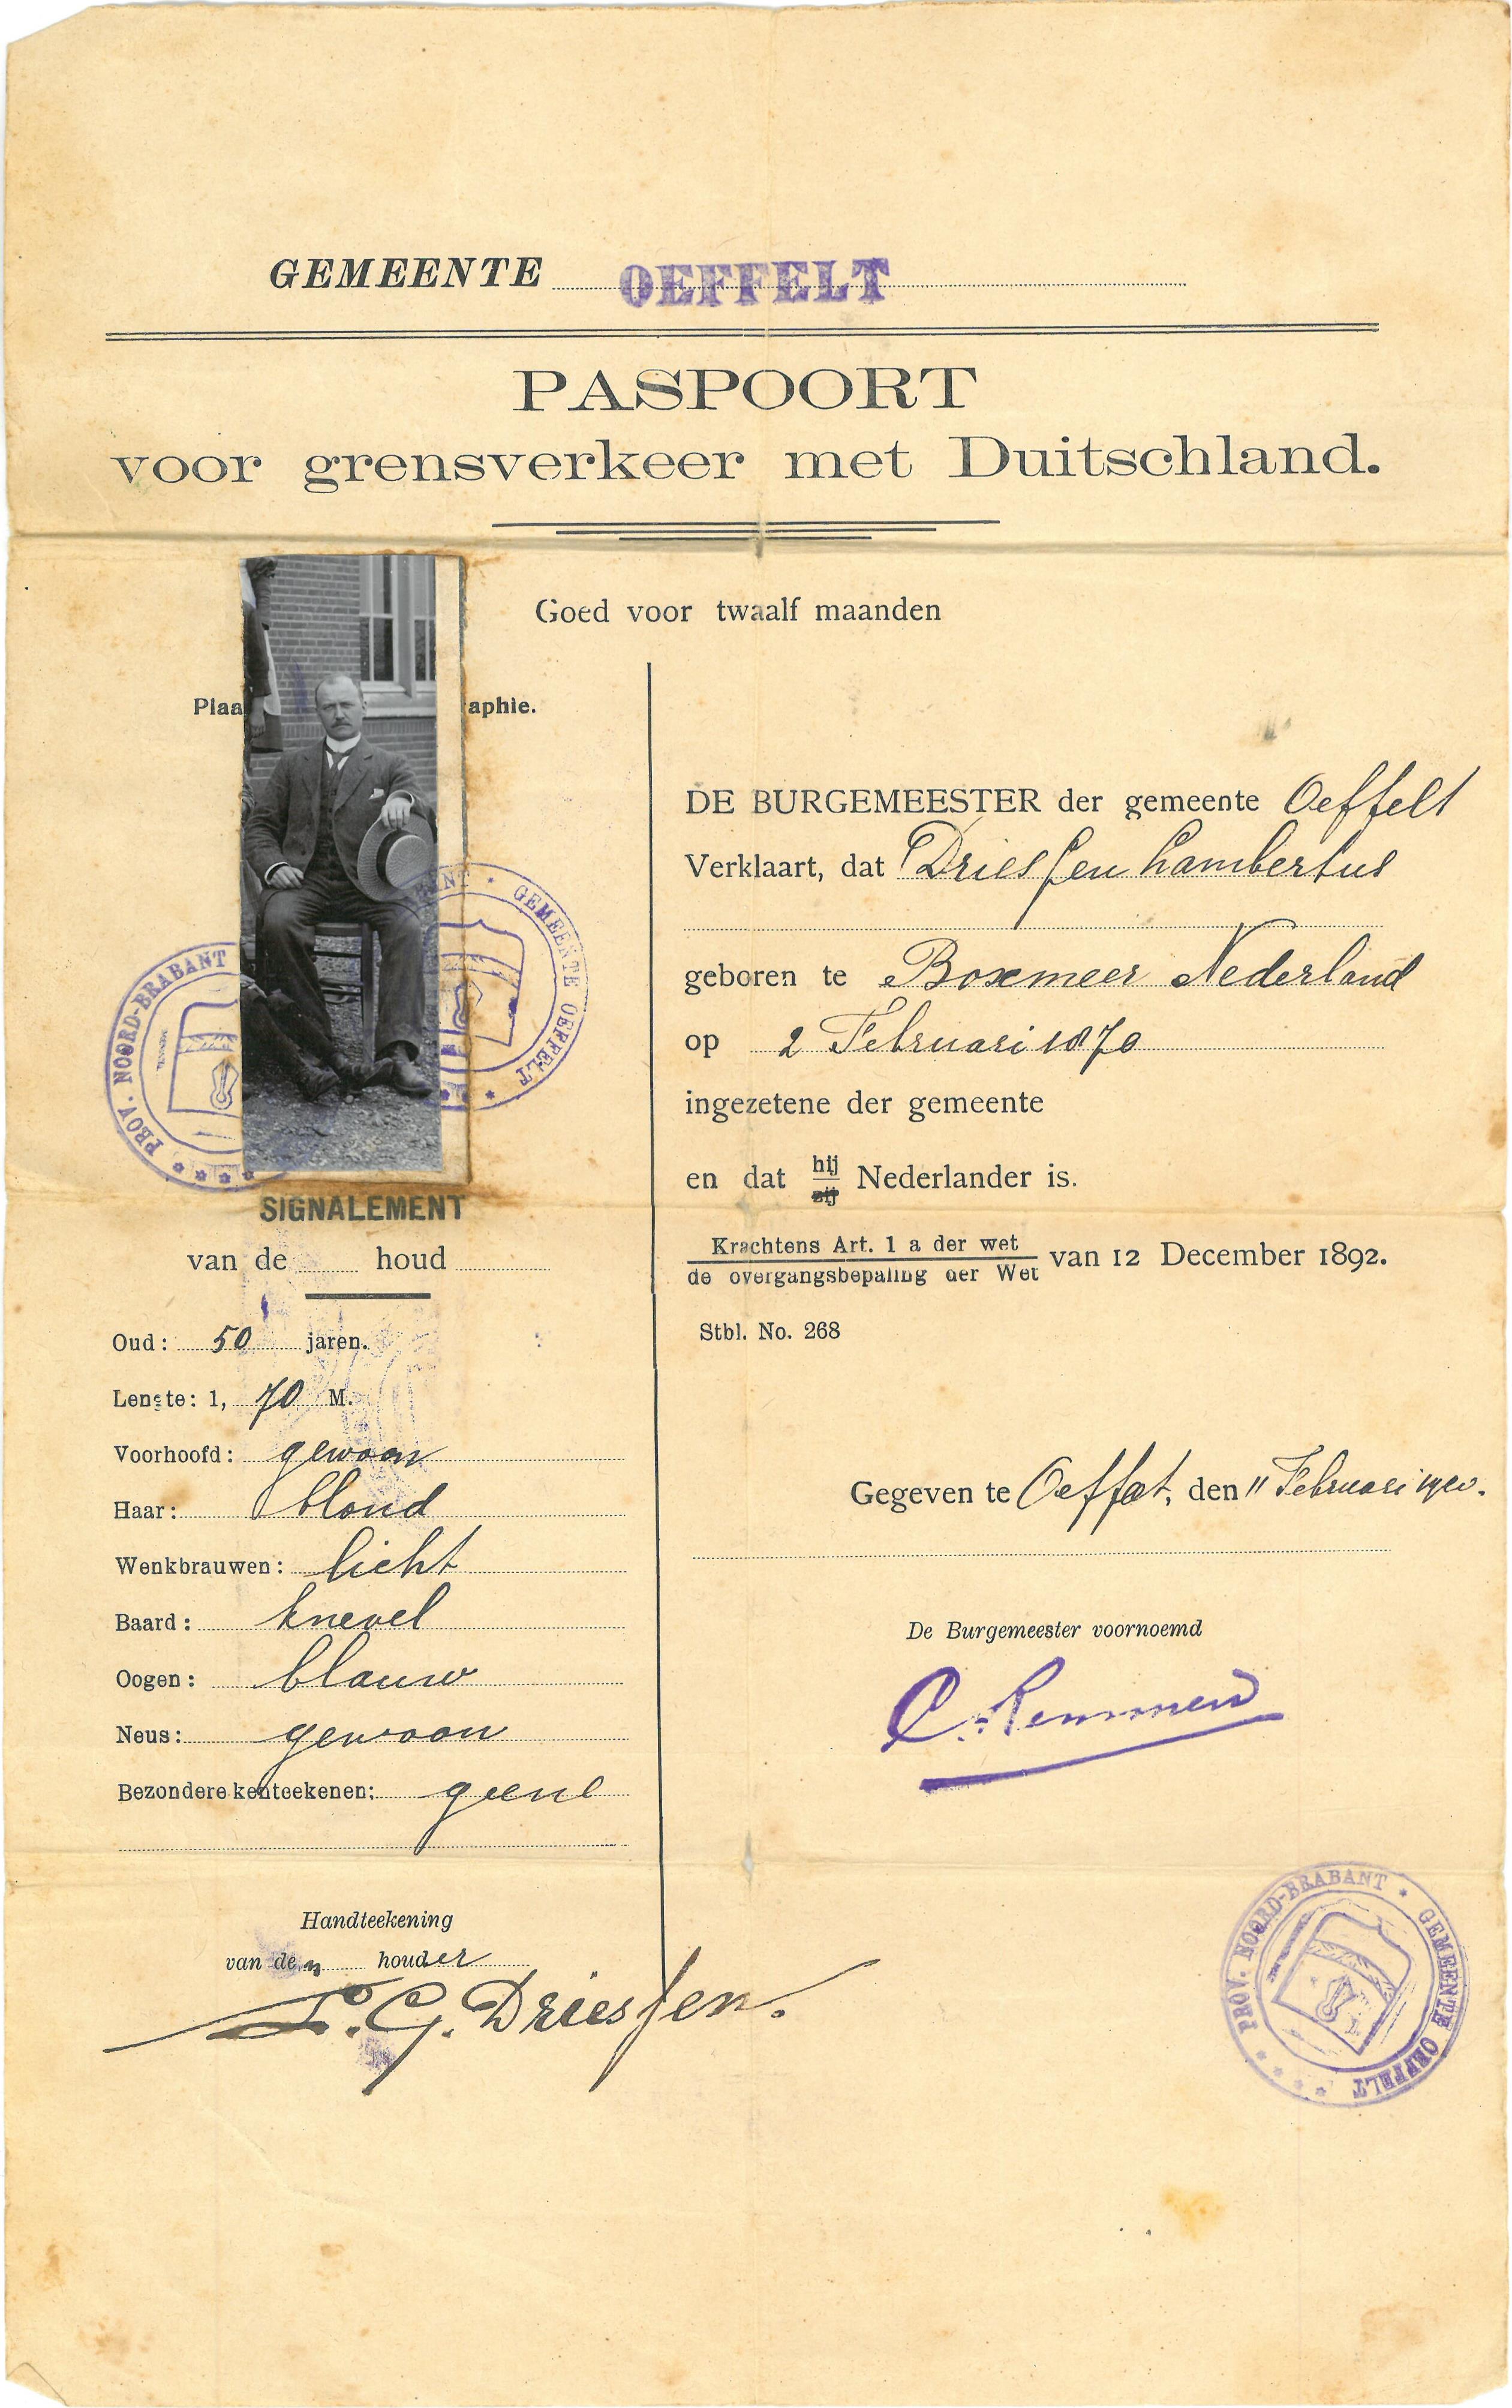 Paspoort voor grensverkeer met Duitsland van Lambertus Driessen. Afgegeven door de gemeente Oeffelt op 11 februari 1920.